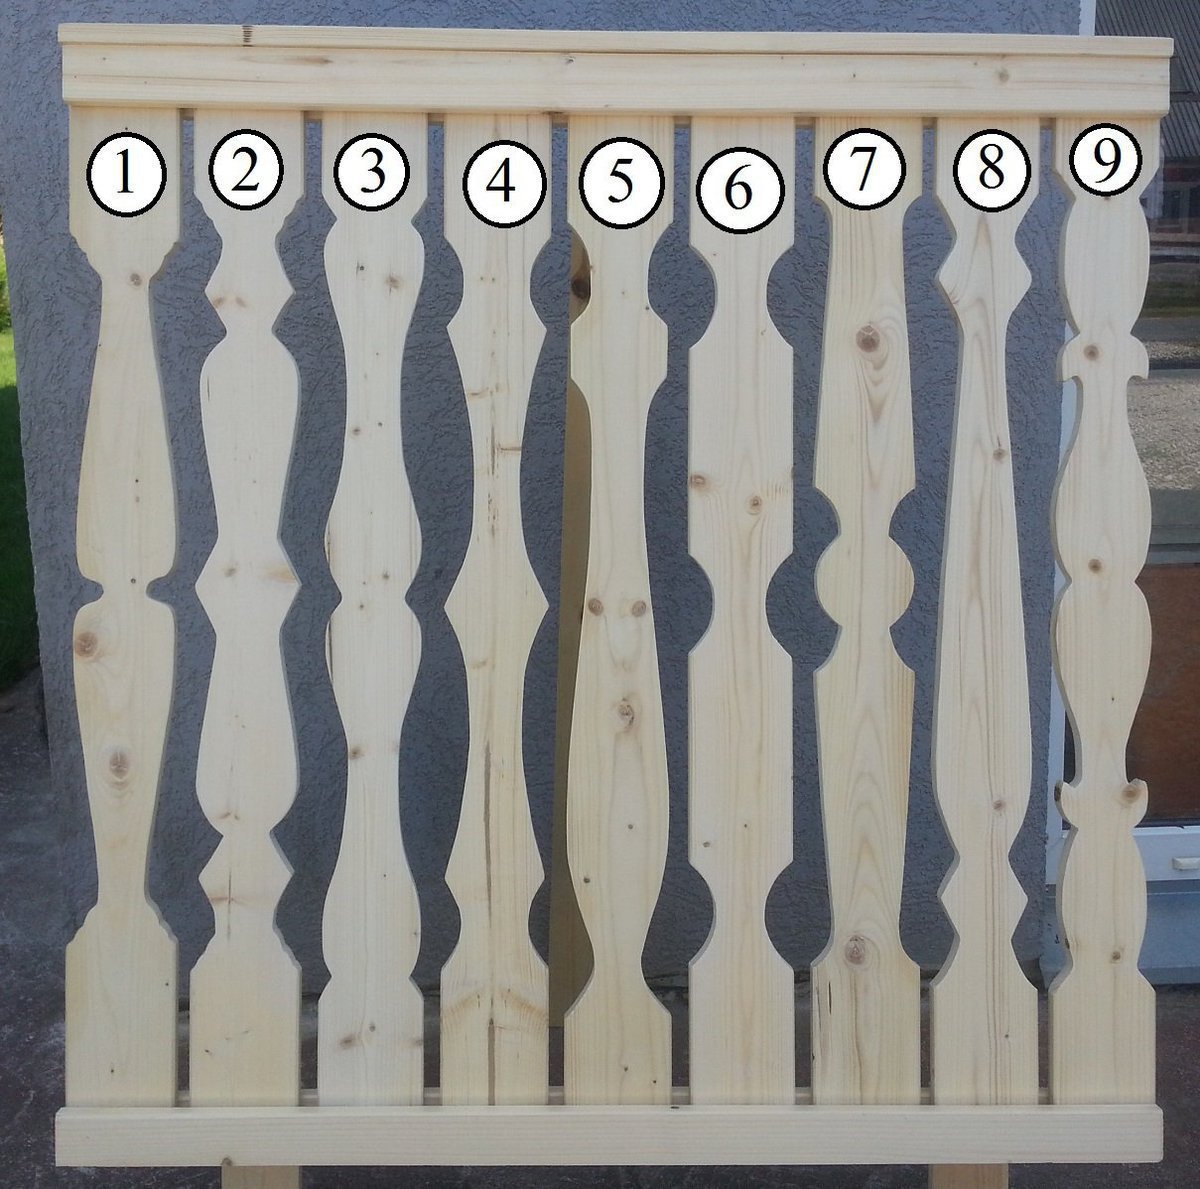 Резной деревянный забор ‒ ручное декорирование